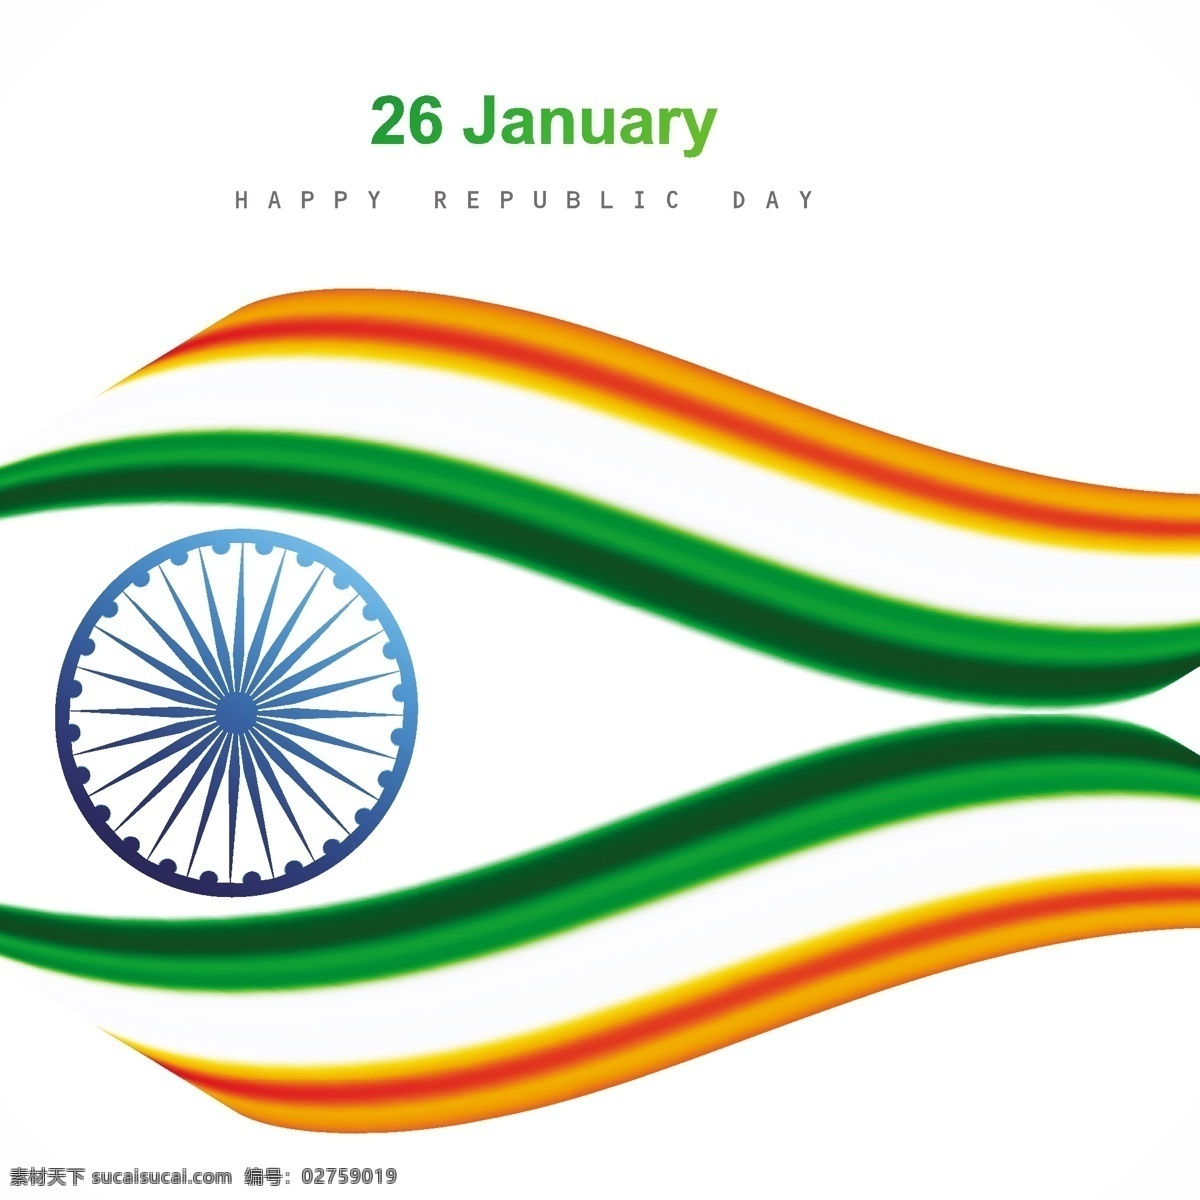 印度 国旗 背景 抽象 节日 车轮 和平 印度国旗 独立日 国家 自由 日 政府 波浪 爱国 一月 独立 民主 白色